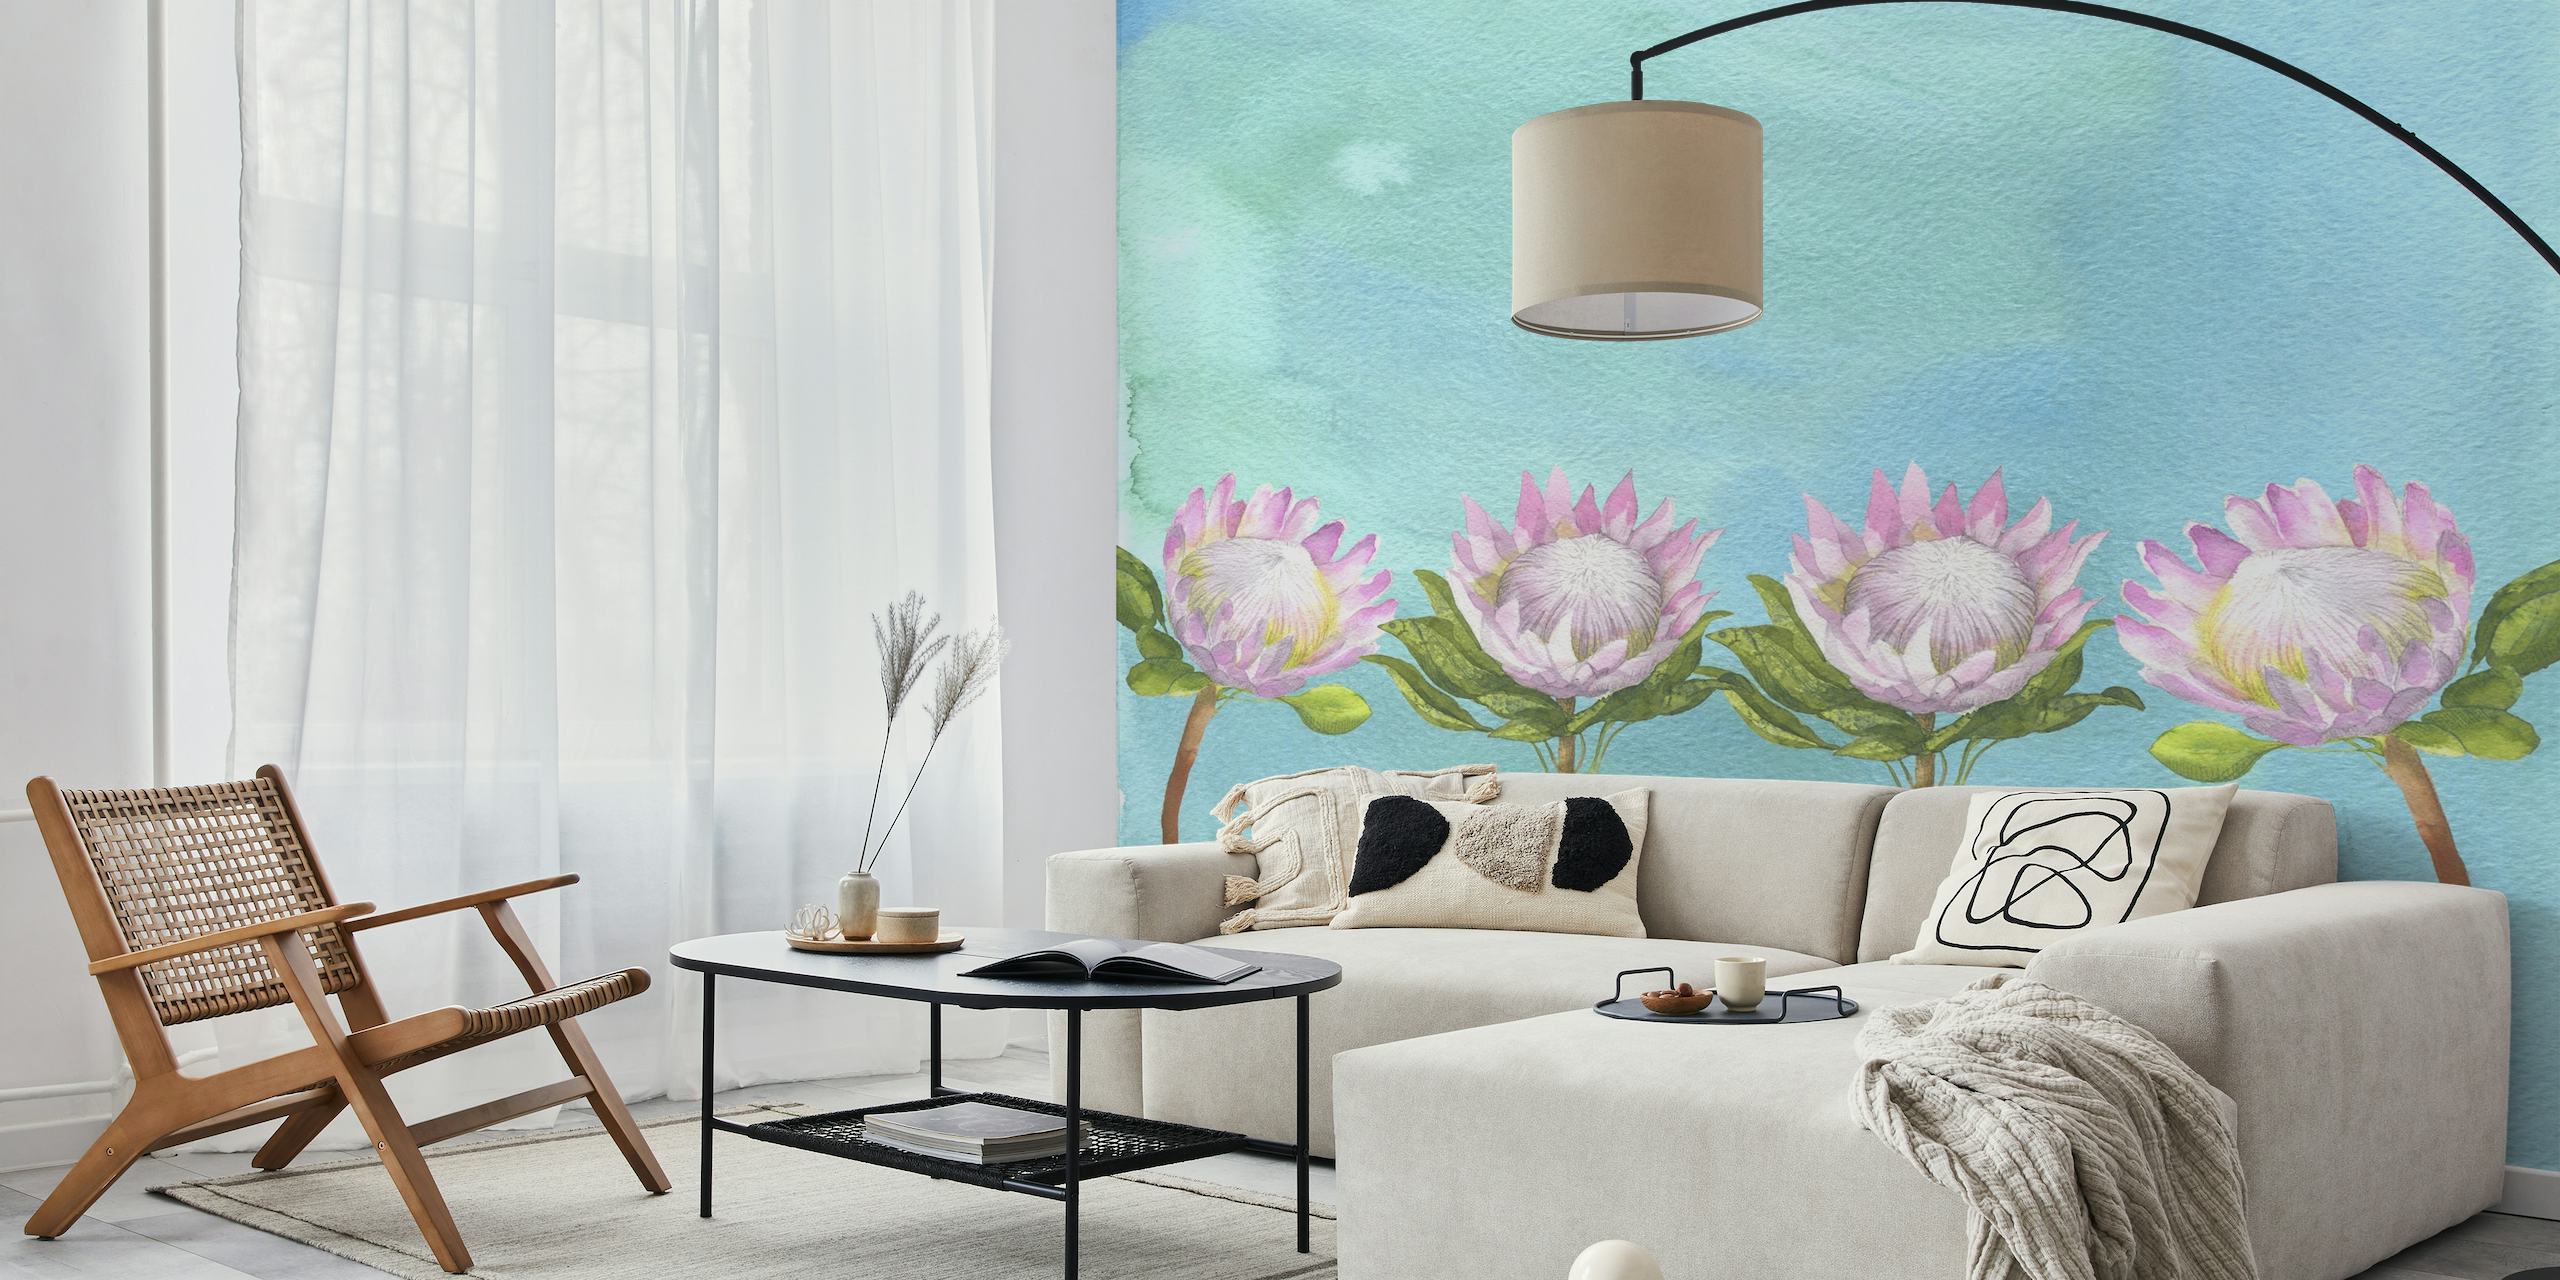 Række af fem lotusblomster mod en rolig akvarel baggrund